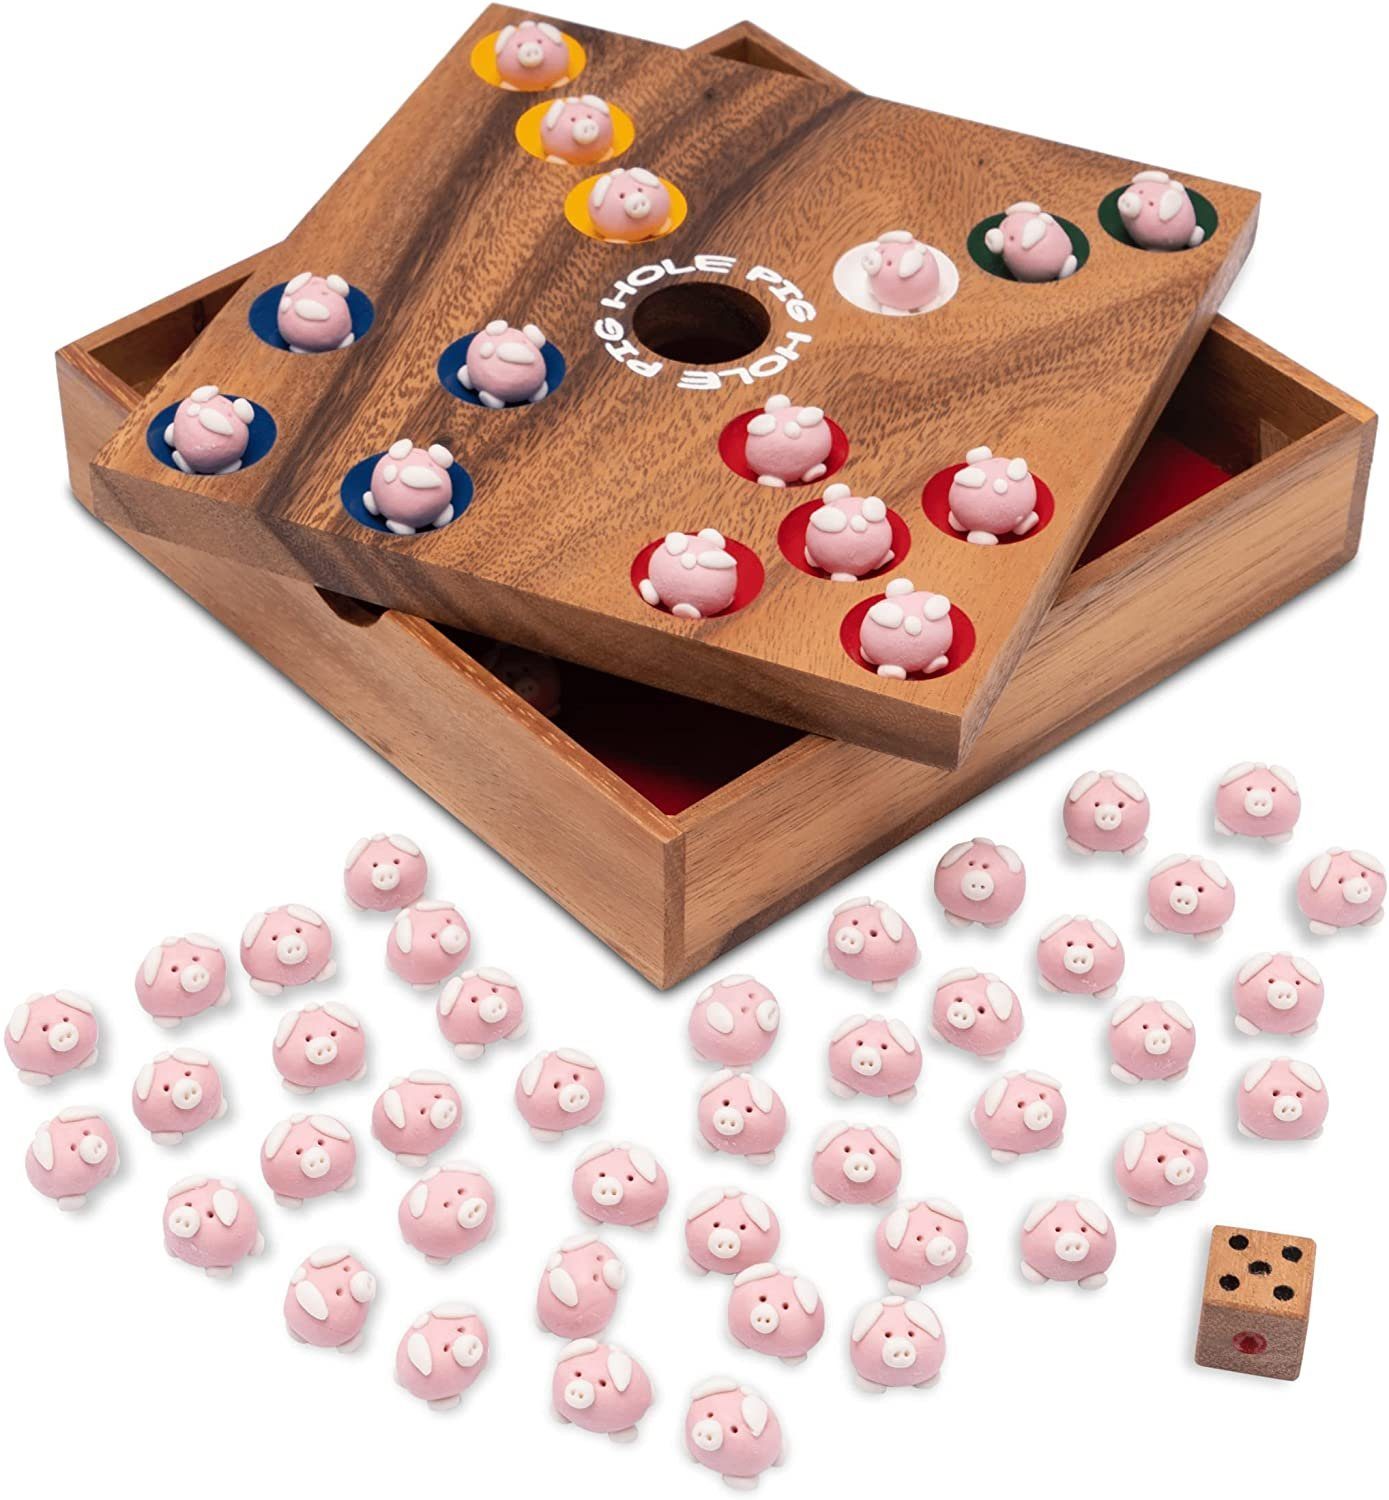 Logoplay Holzspiele Spiel, Pig Hole für 2 bis 6 Spieler - Spielfeld 18 x 18 cm - inkl. 60 Schweinchen Holzspielzeug